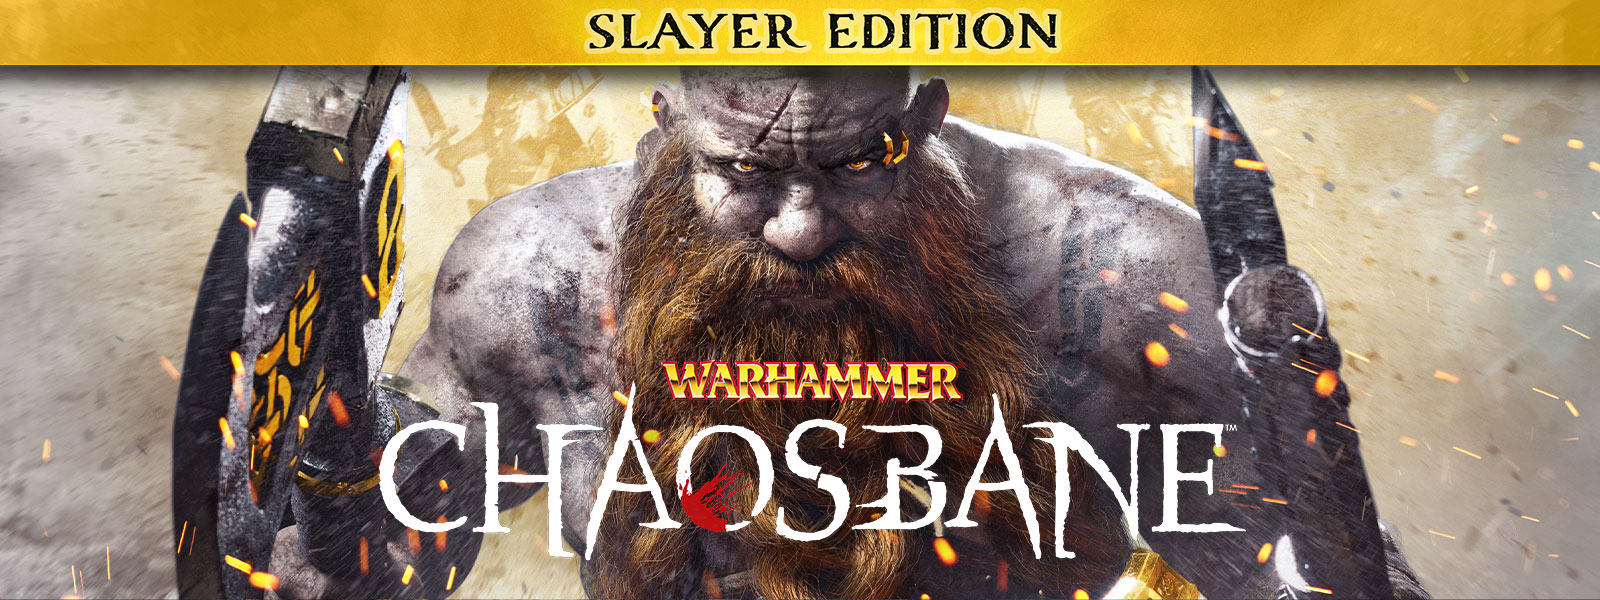 Warhammer: Chaosbane, Slayer Edition, un uomo barbuto cammina attraverso scintille di fuoco, con un'ascia in ciascuna mano.